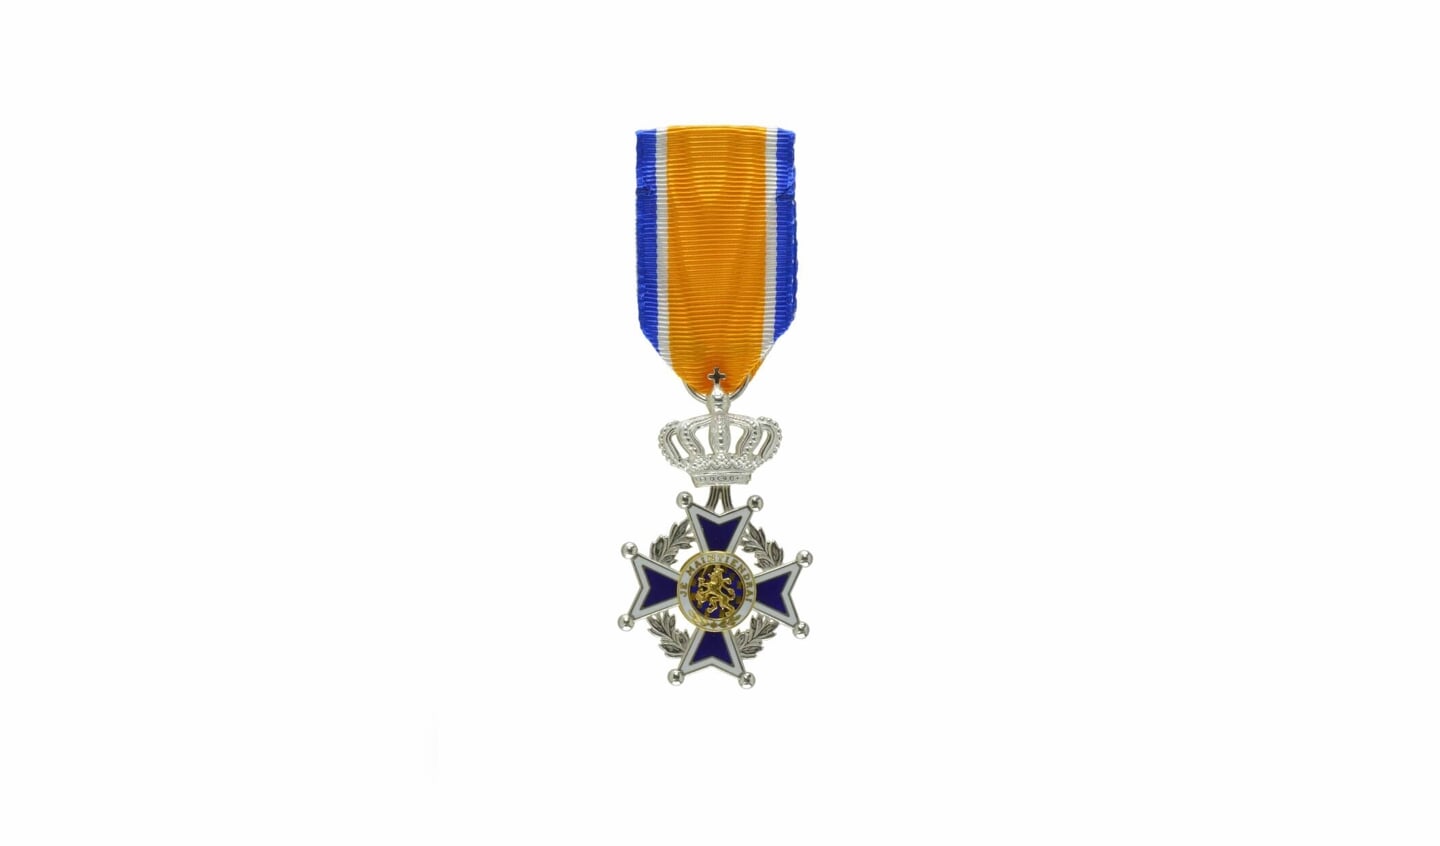 Lid in de Orde van Oranje-Nassau.